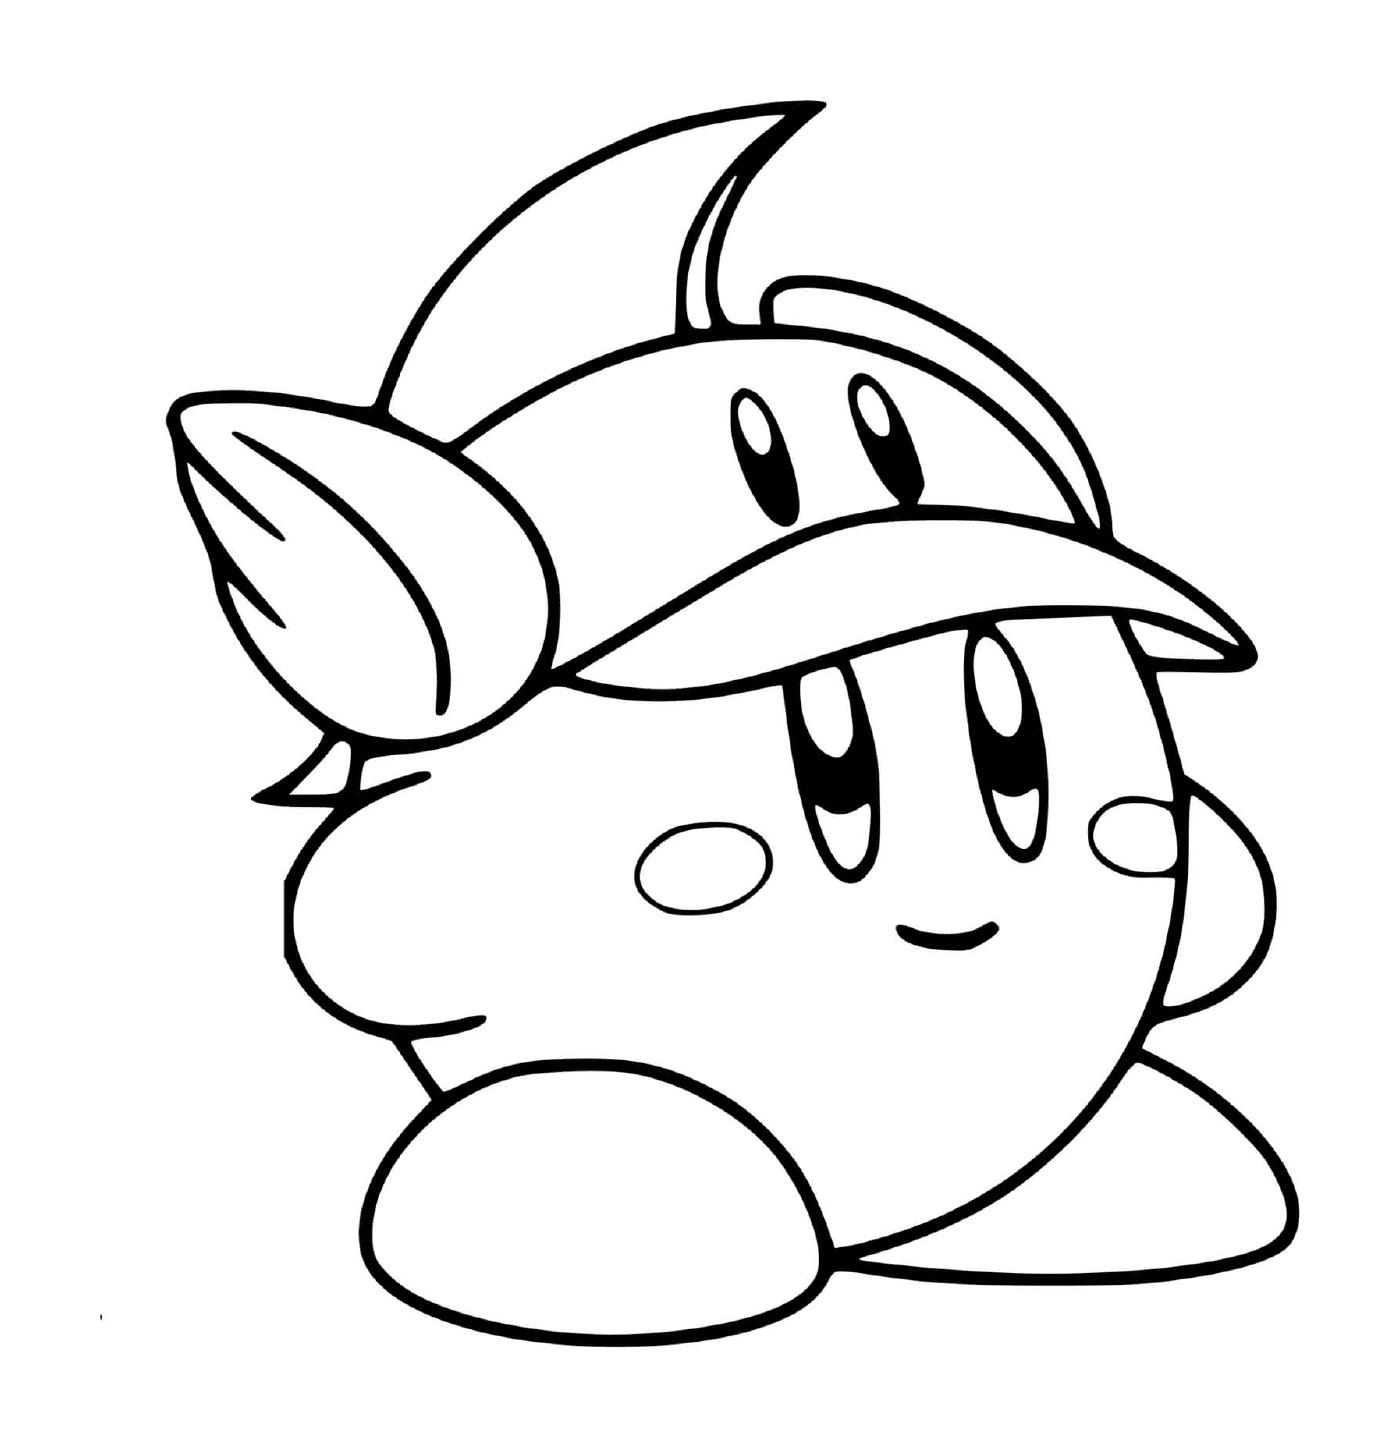  Carino Kirby con un bel berretto 